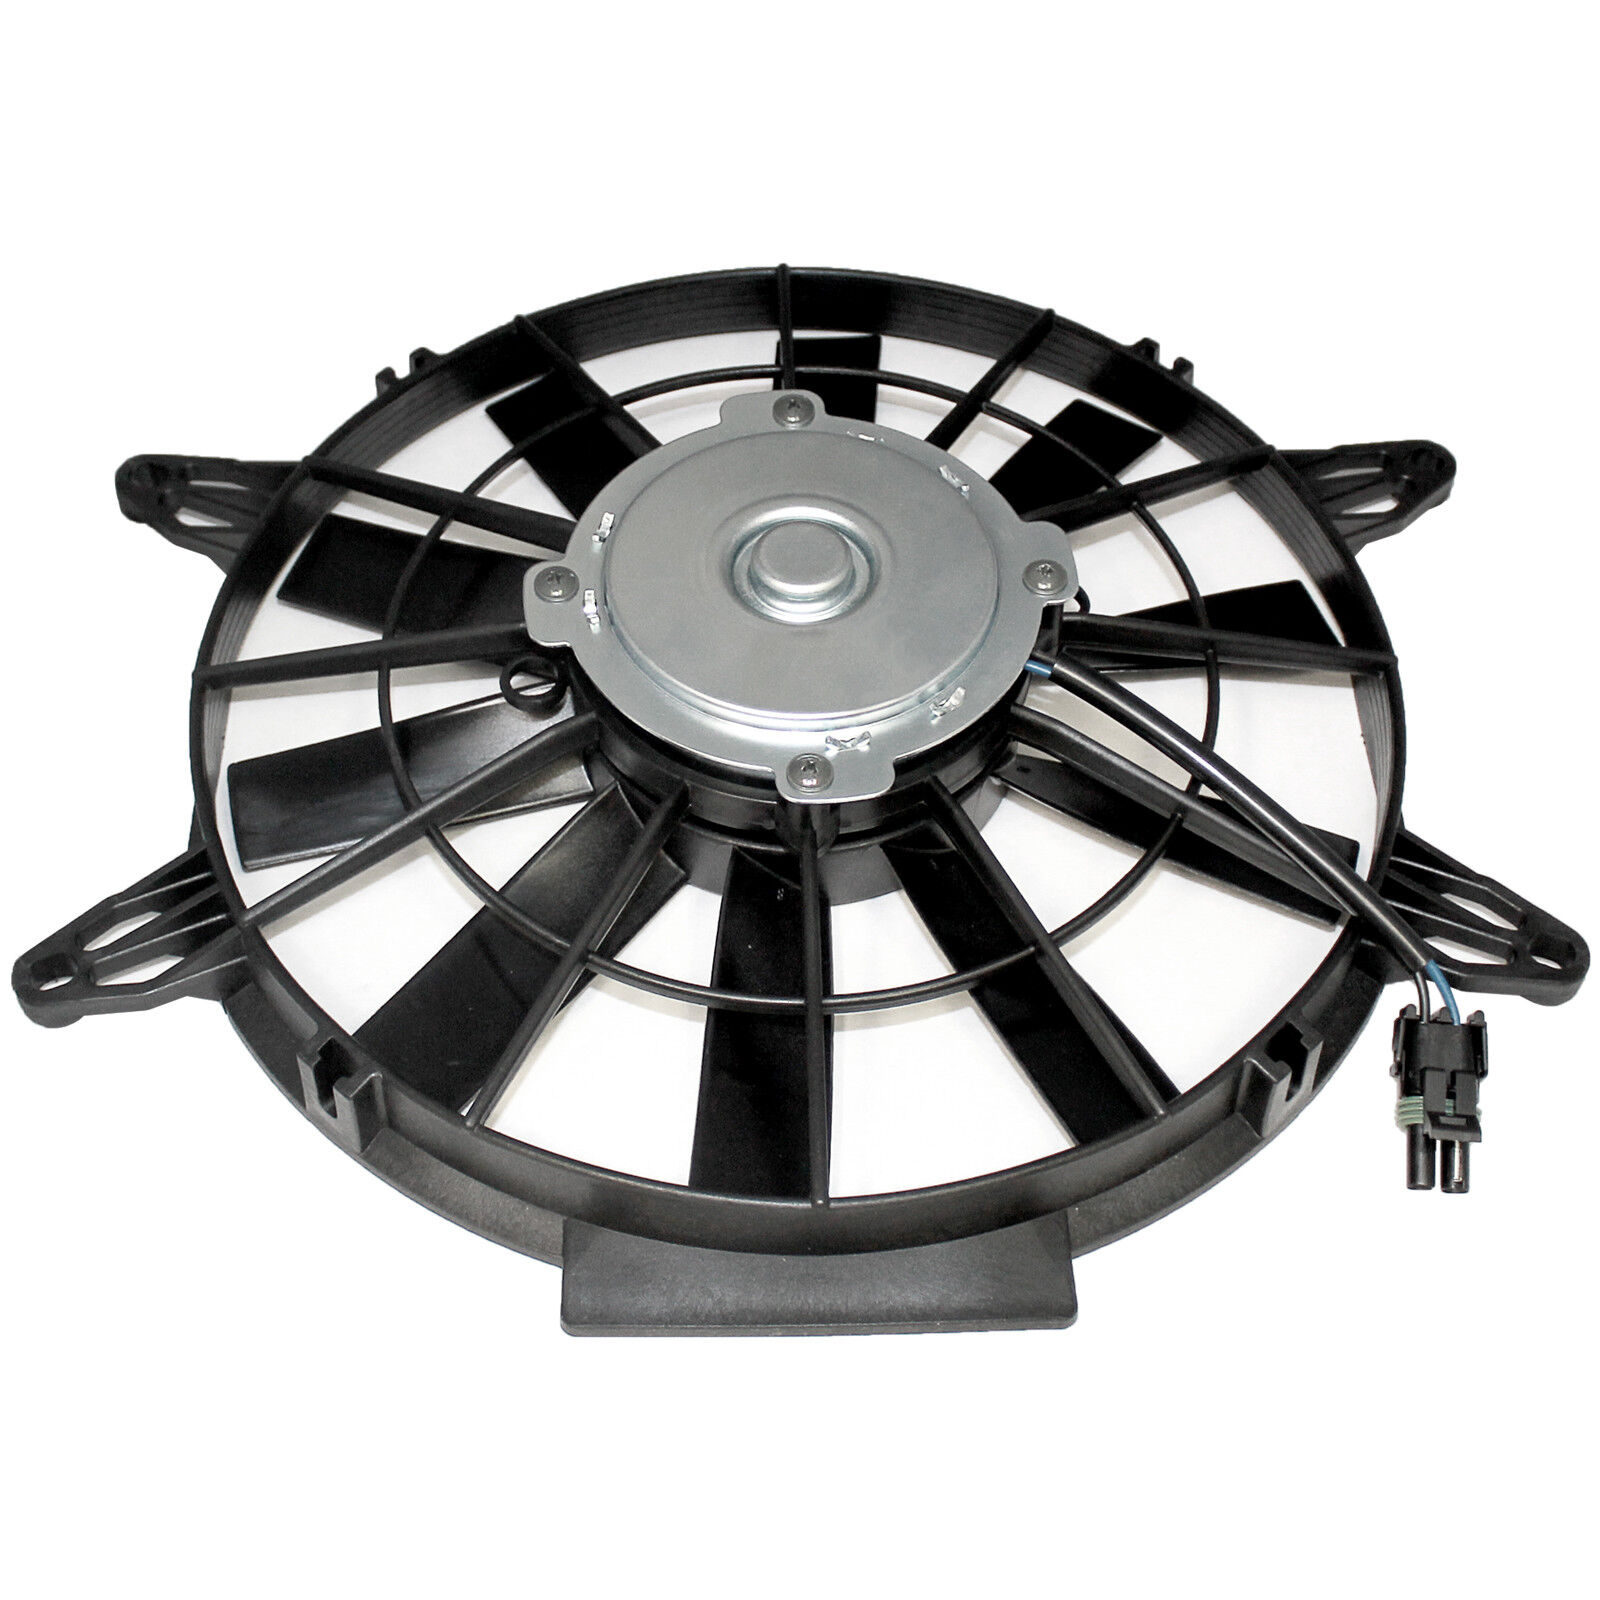 for Polaris Sportsman 500 HO EFI Radiator Cooling Fan Motor New 2004-2011